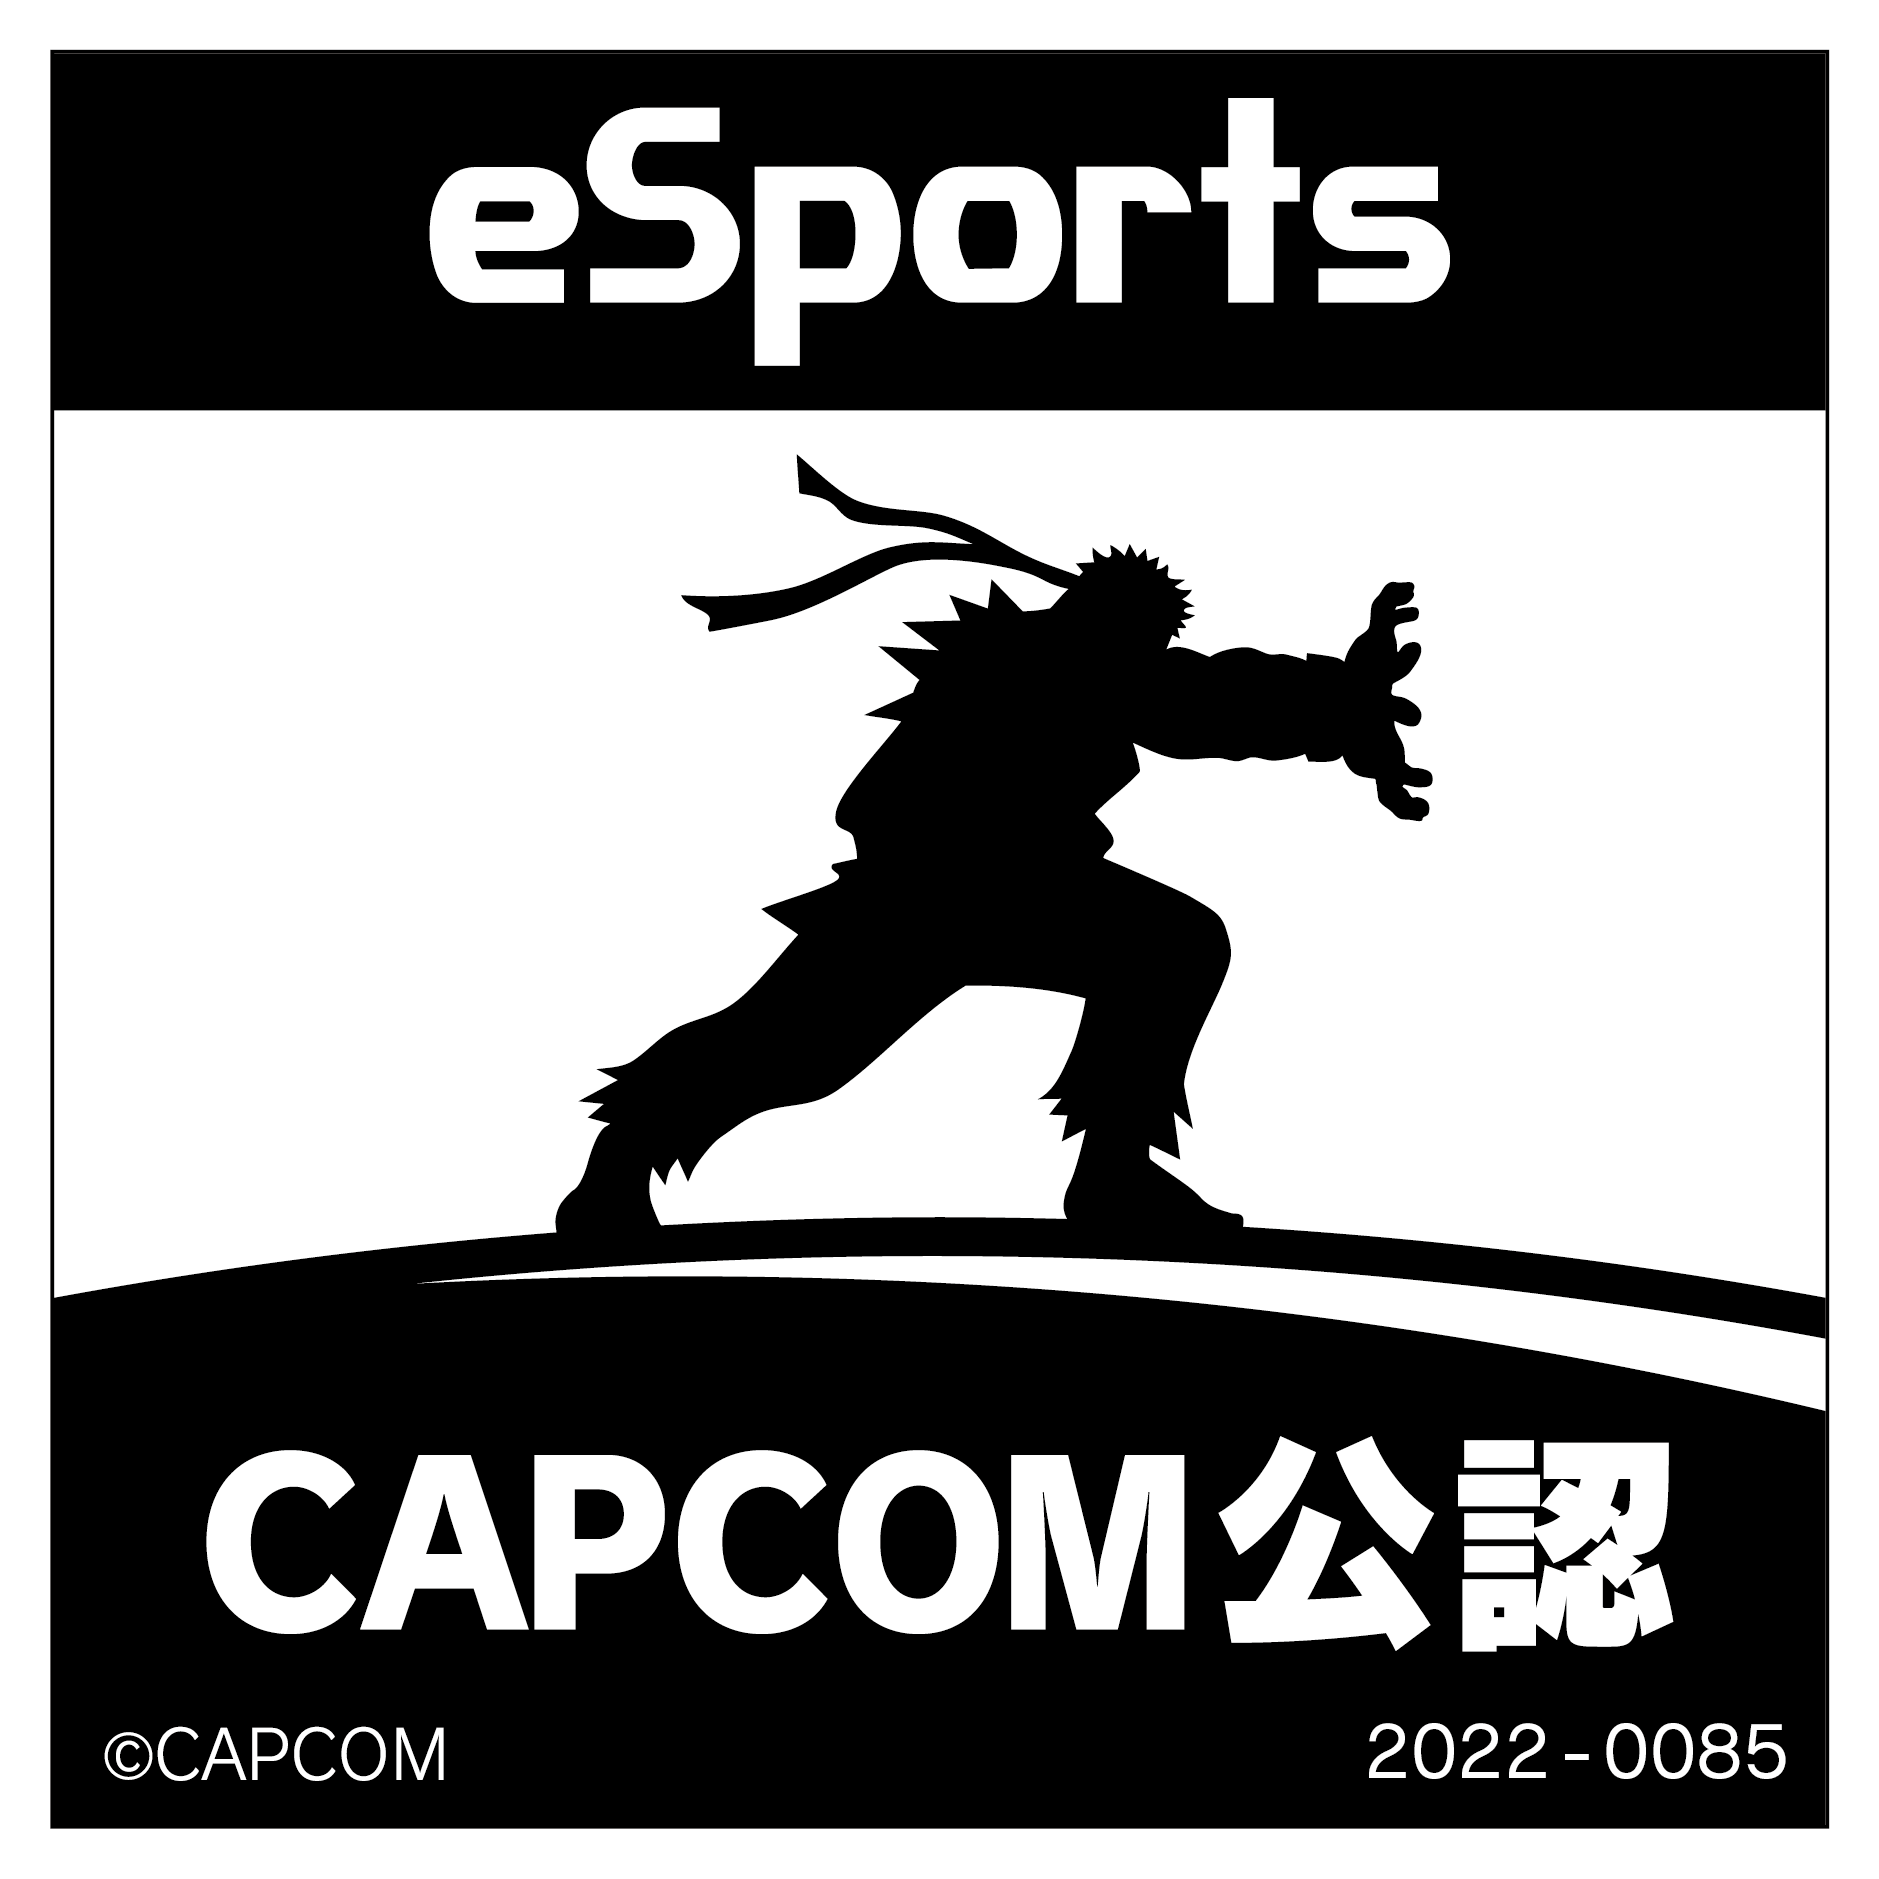 eSports CAPCOM公認 2022-0085